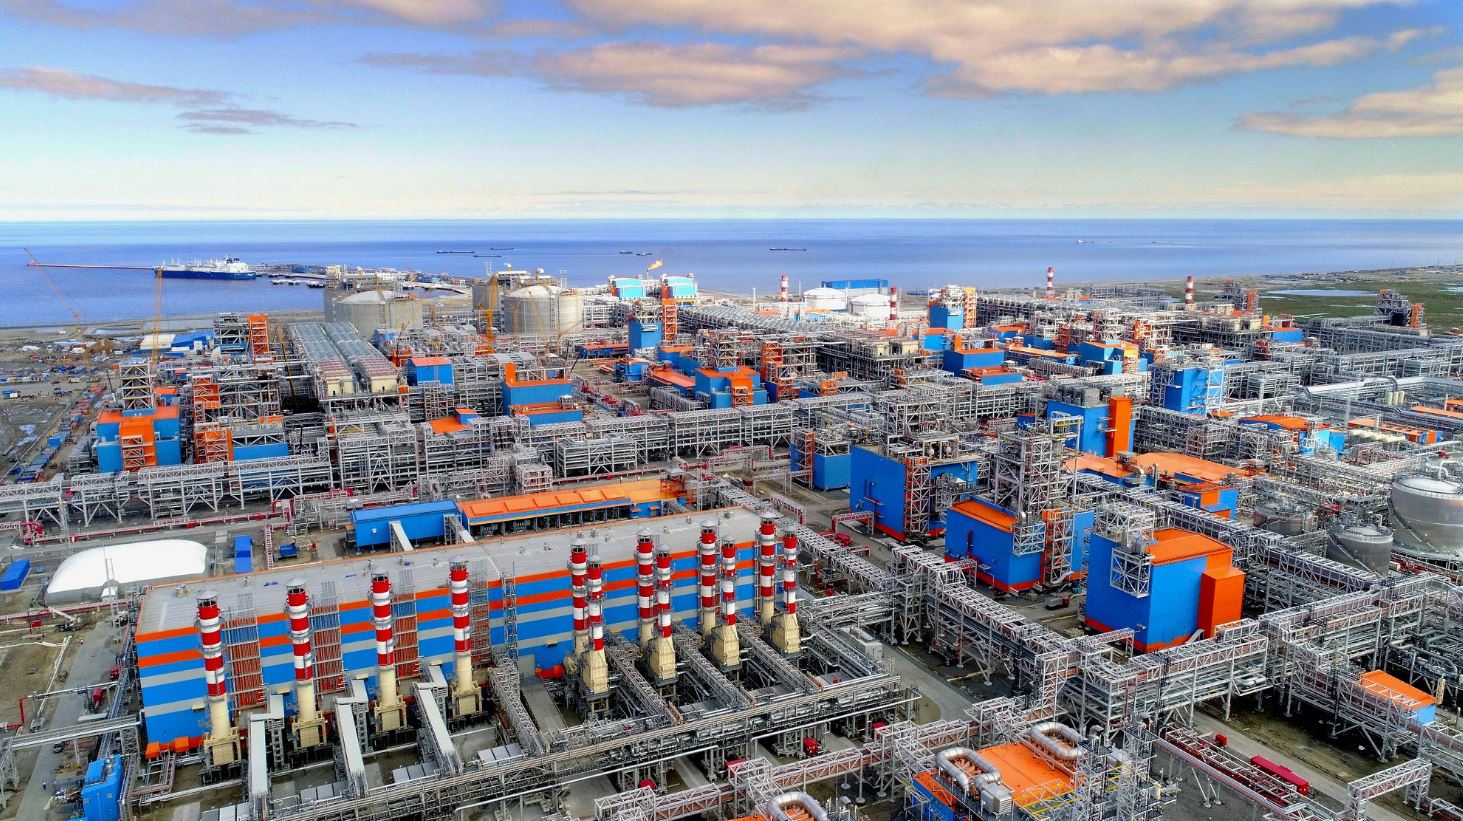 Novatek’s gas production rises, LNG sales down